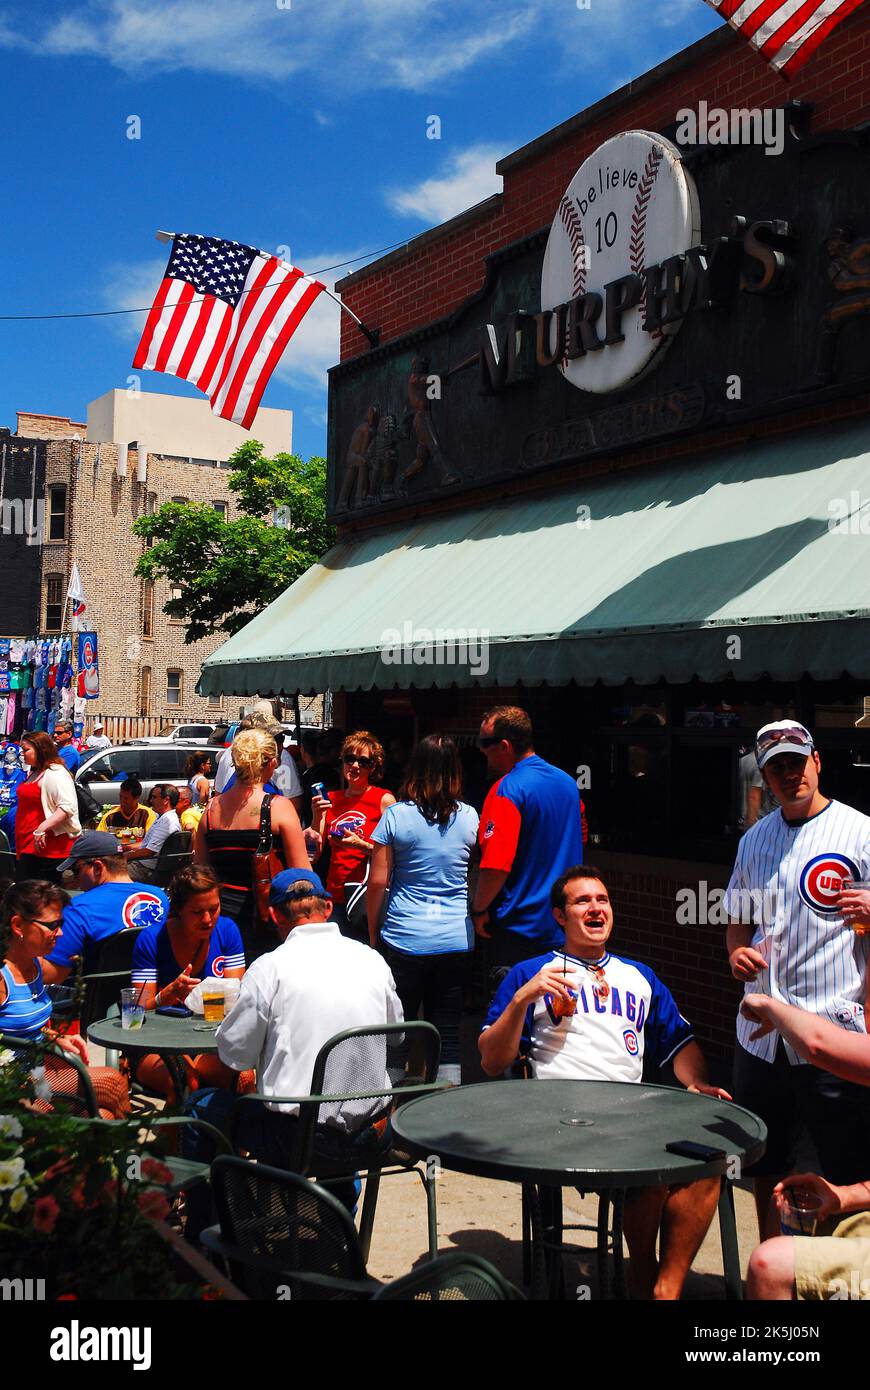 Les fans fêtent un Chicago Cubs Win à Murphy's, l'un des nombreux pubs à quelques minutes à pied du stade de baseball Wrigley Field Banque D'Images